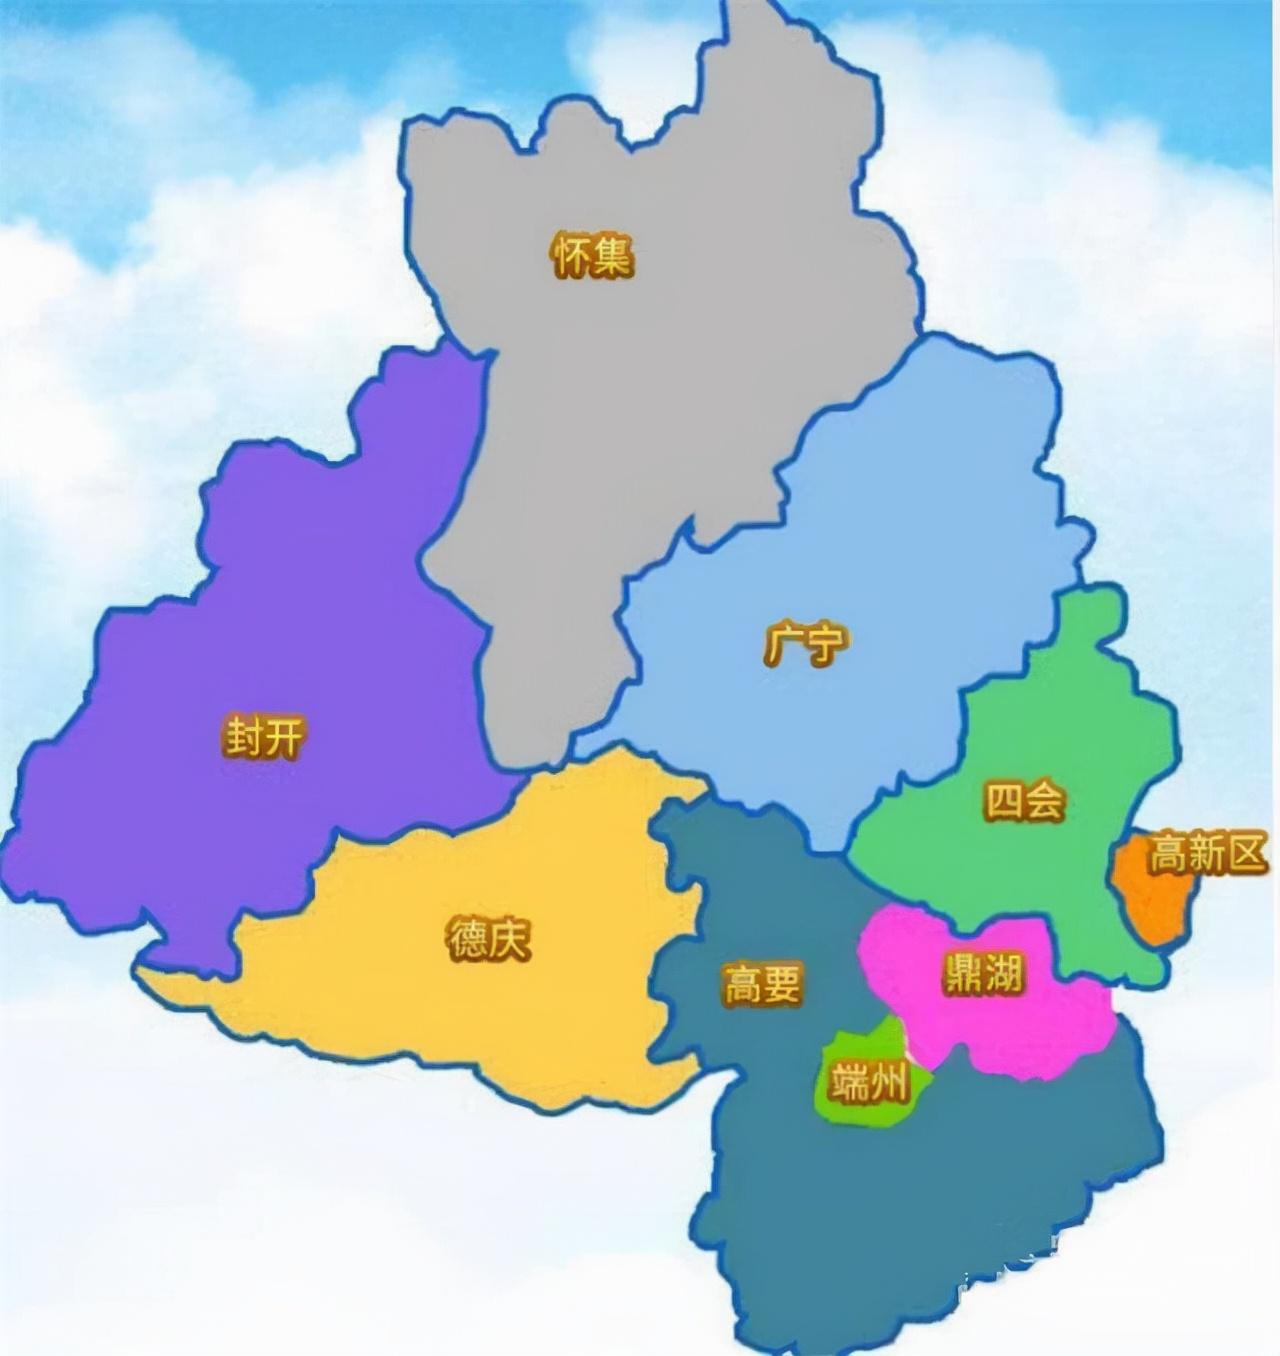 肇庆区域划分图2021年,肇庆地区生产总值为2649